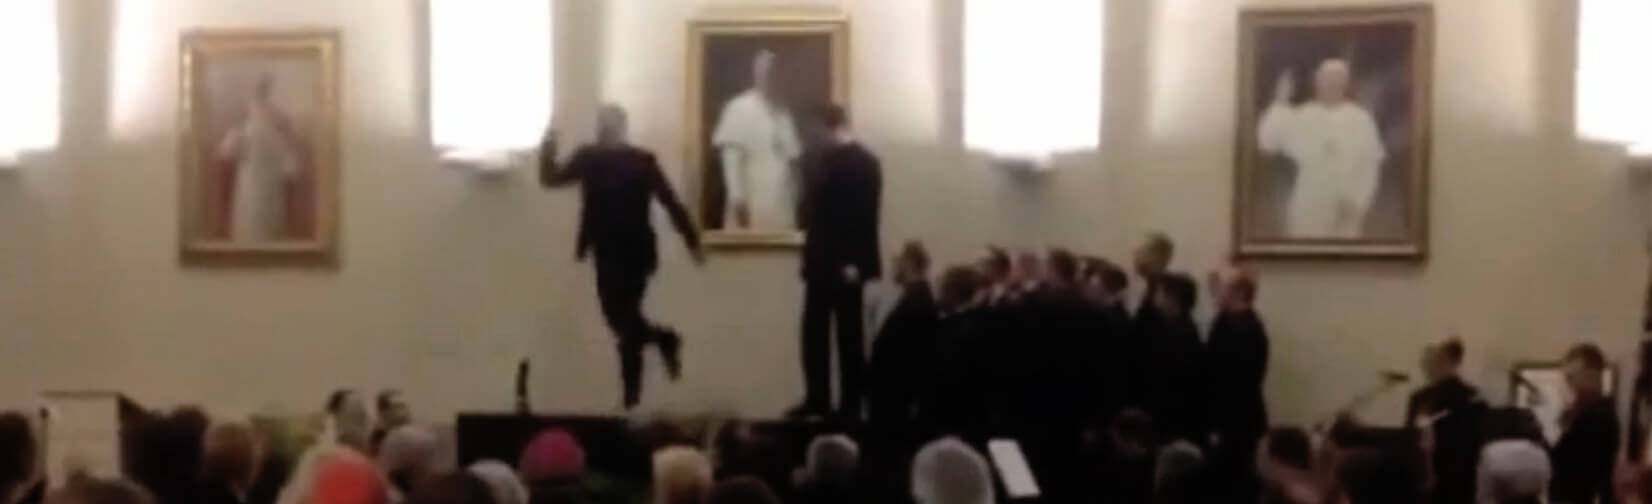 american-tap-and-irish-dancing-priests-go-viral